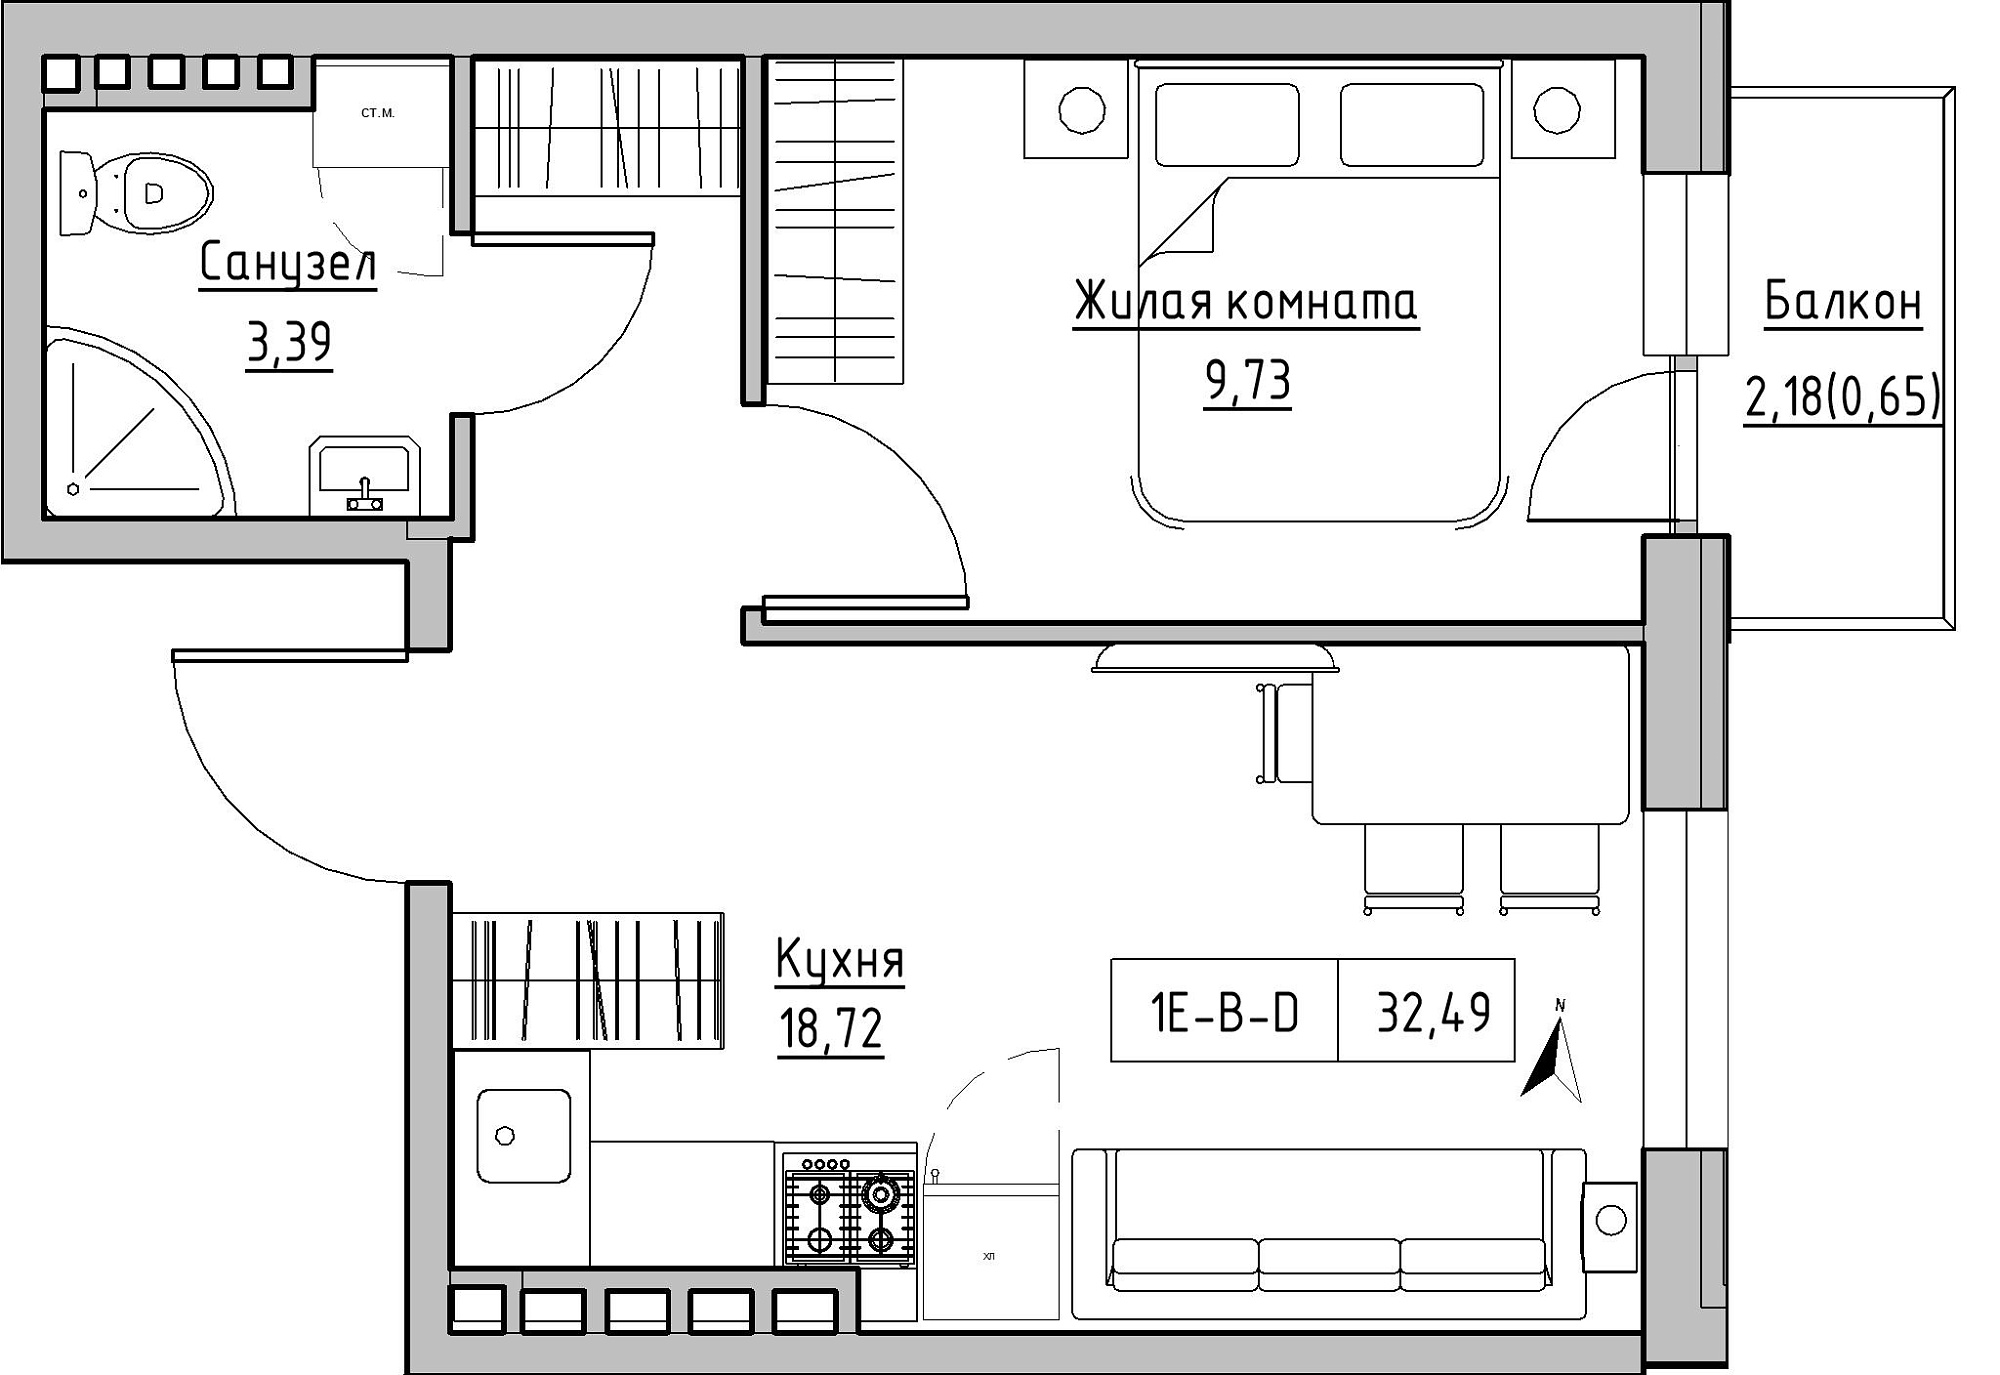 Планування 1-к квартира площею 32.49м2, KS-024-05/0016.